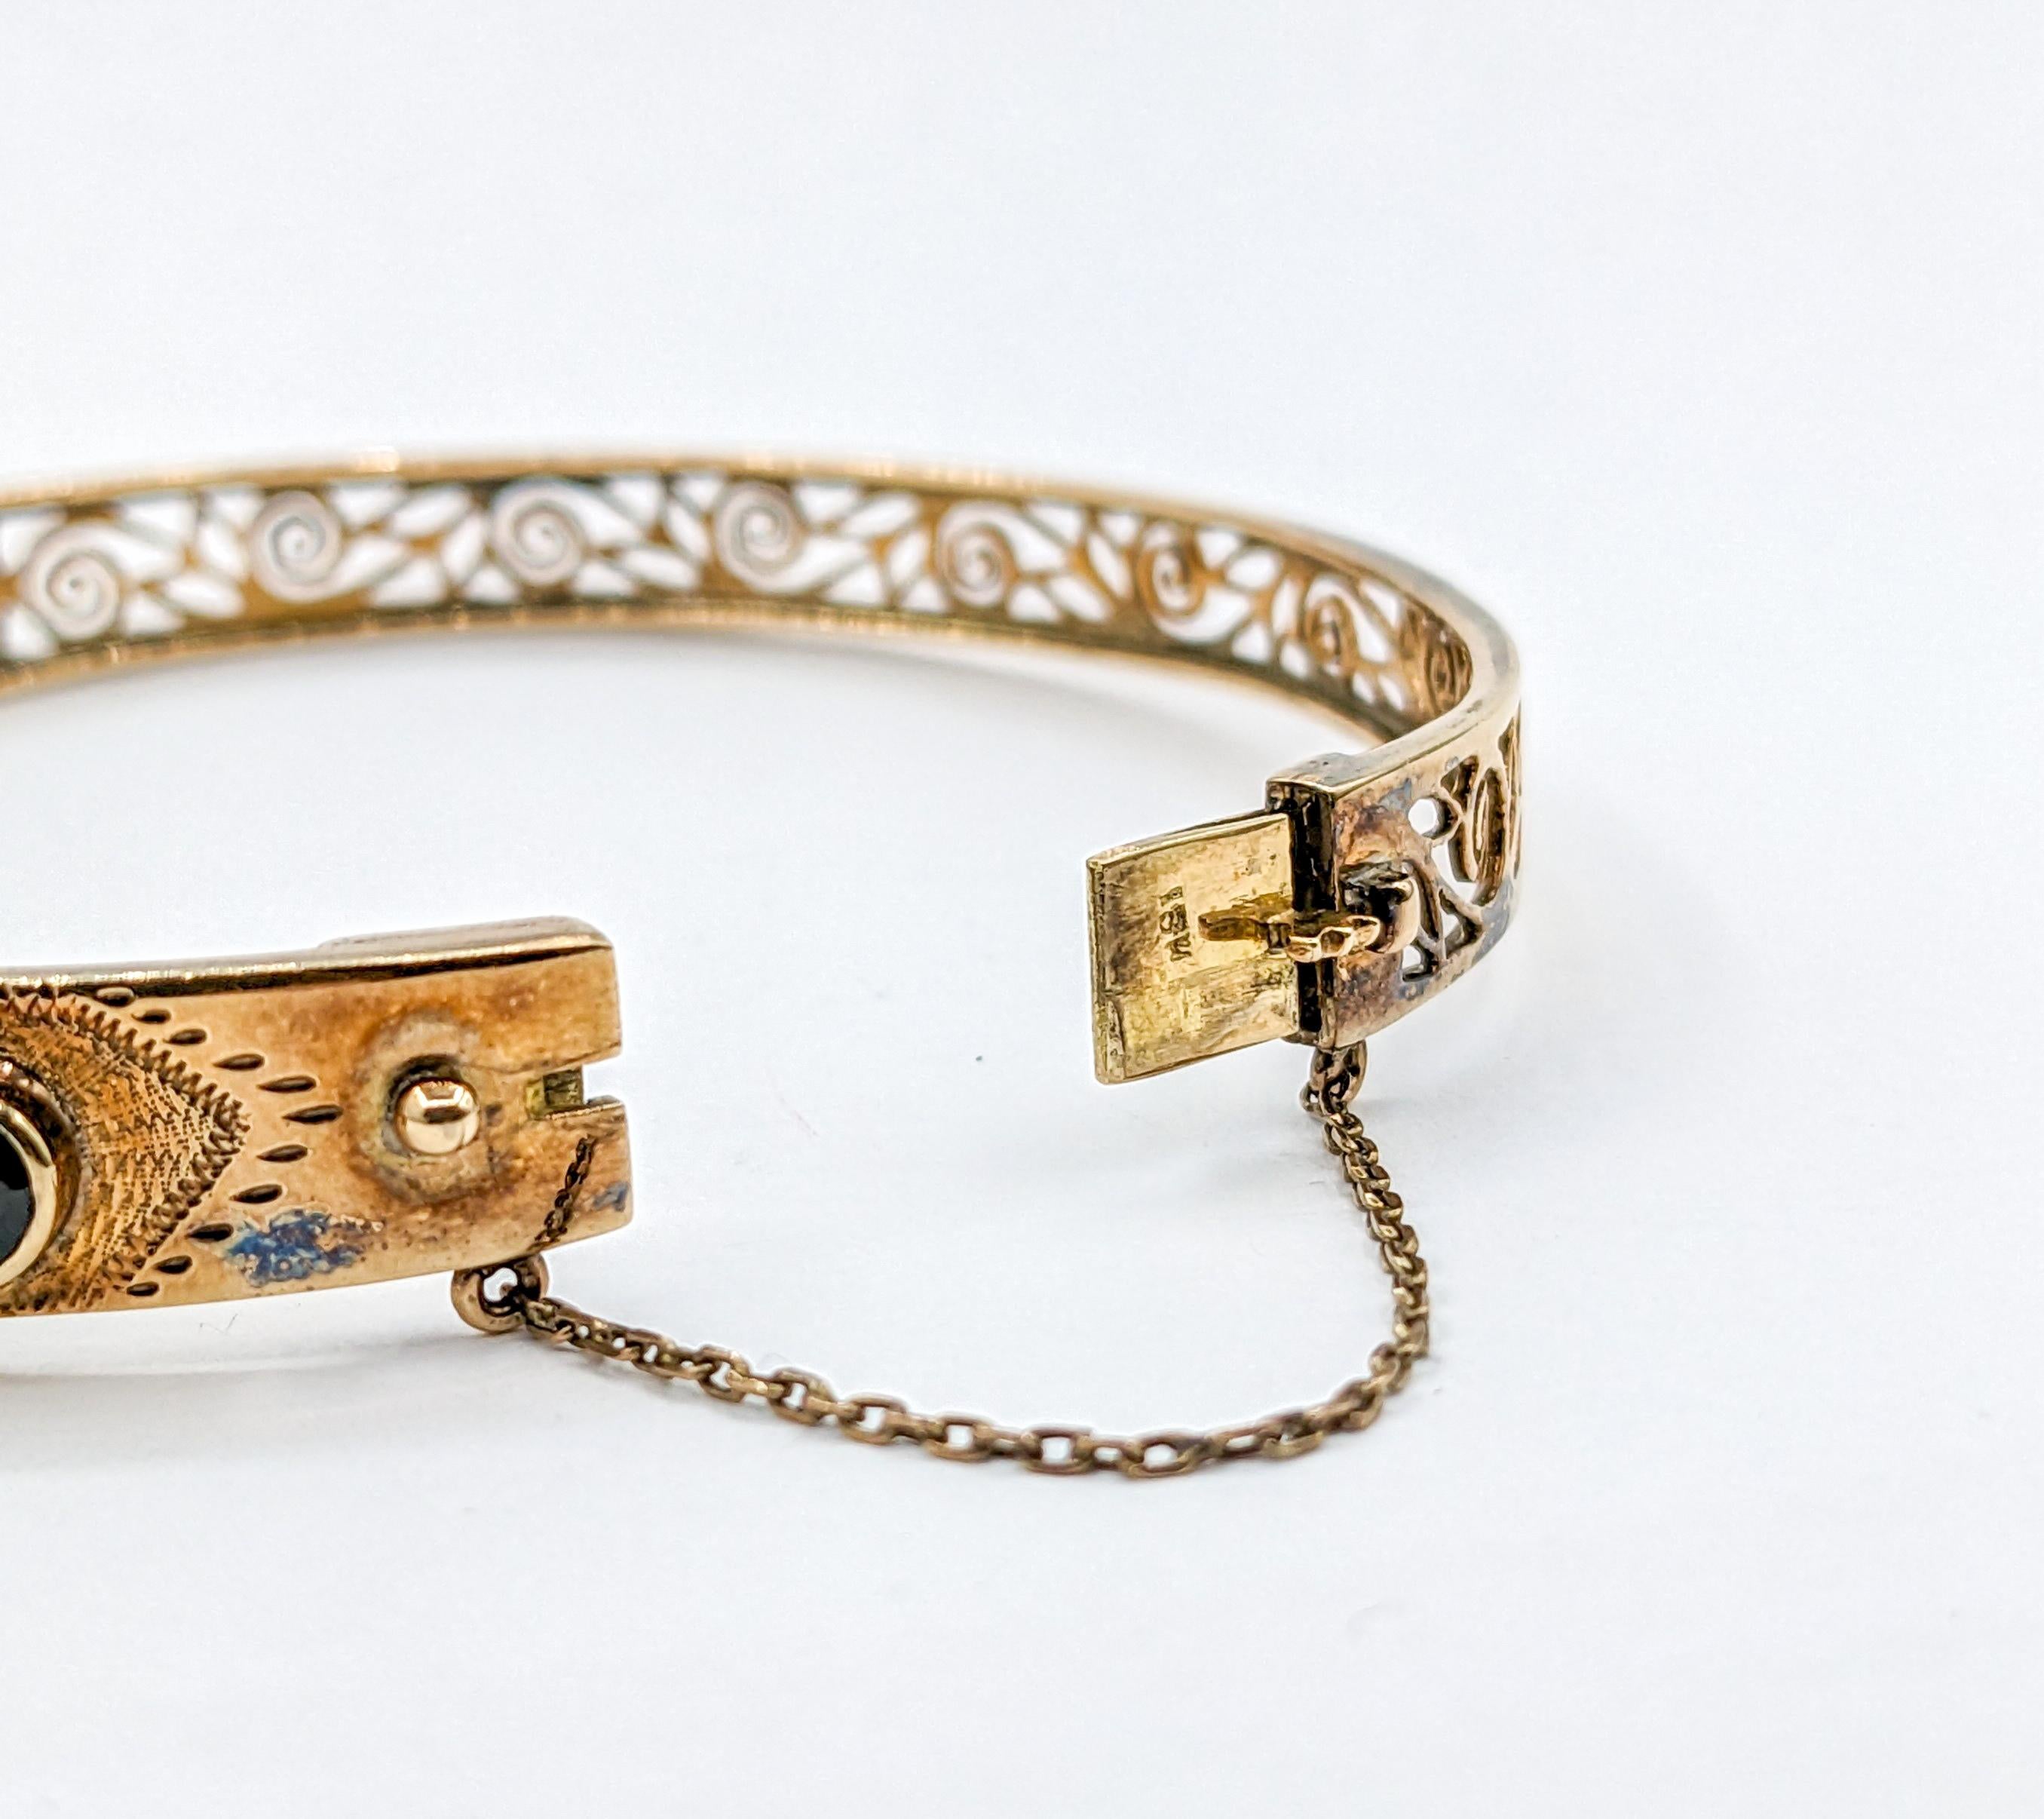 Vintage 10.1ctw Oval Teal Sapphire Bangle Bracelet in 18k gold For Sale 2